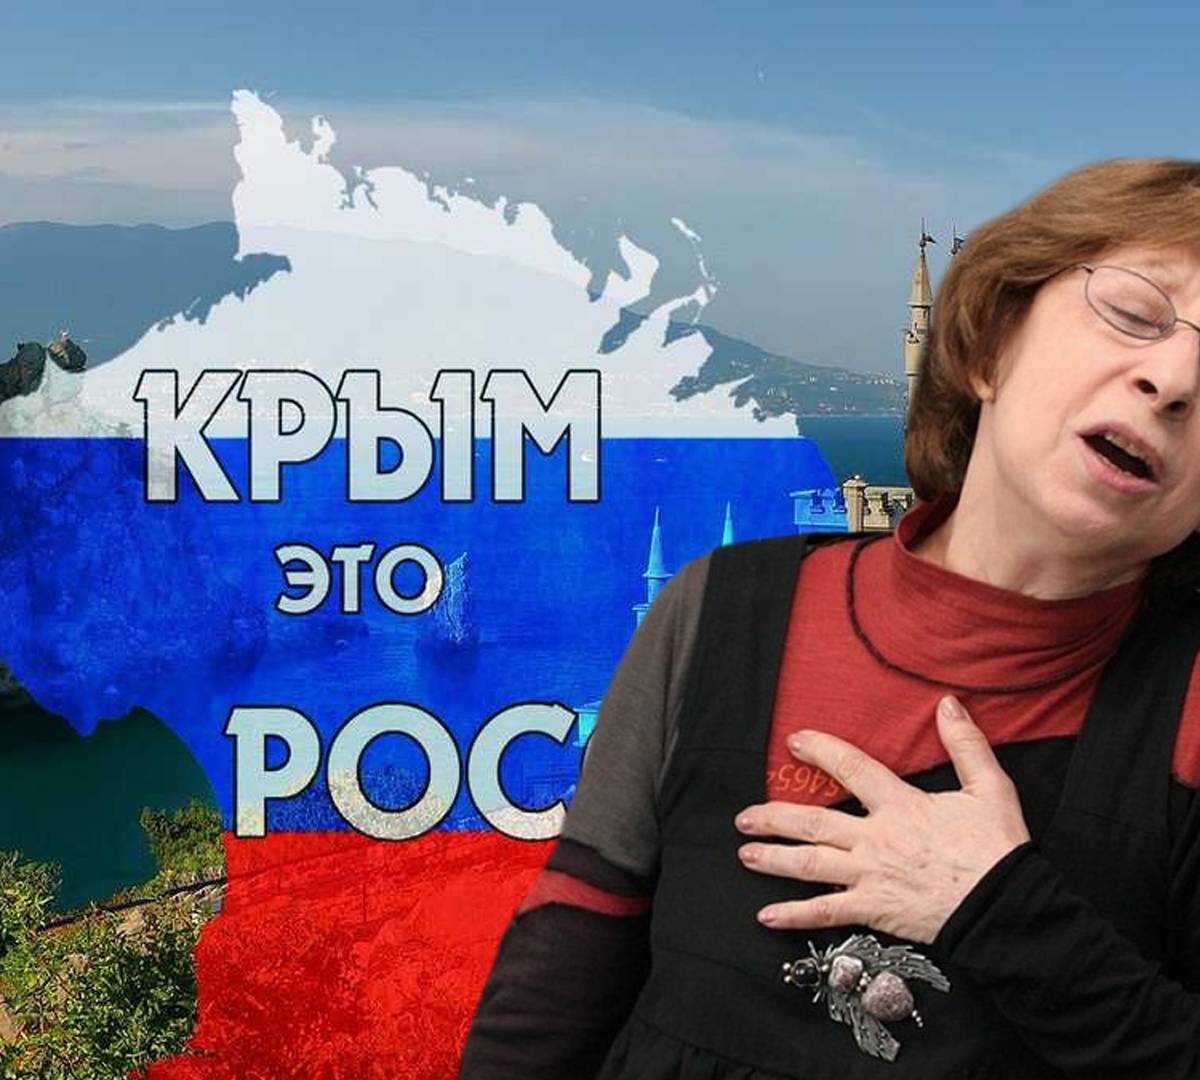 Деньги не пахнут: Ахеджакова «признала» Крым нашим